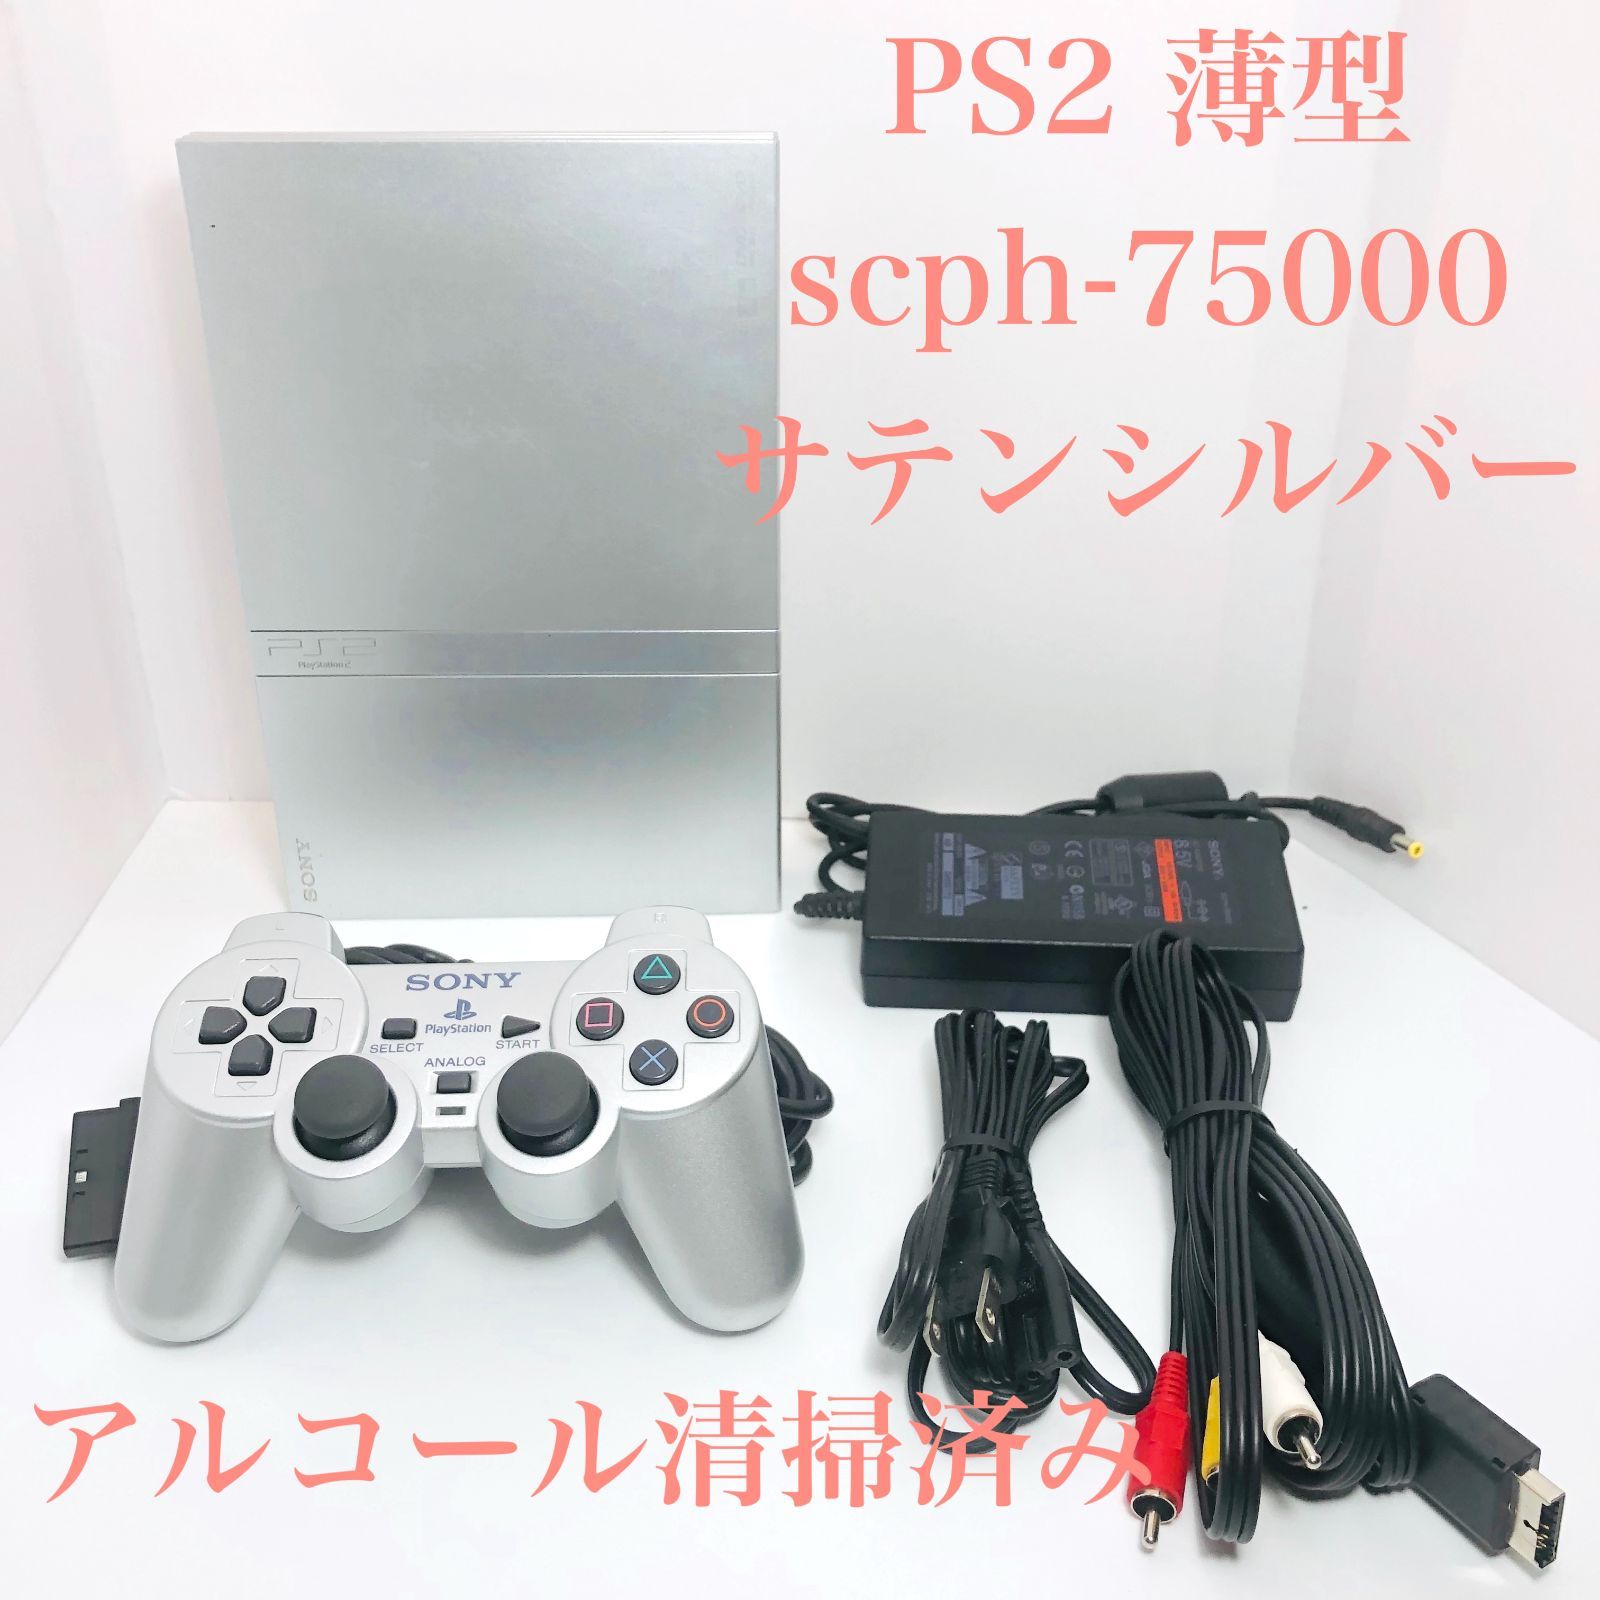 【すぐ遊べるセット】PS2 SCPH-75000 セット サテン・シルバー